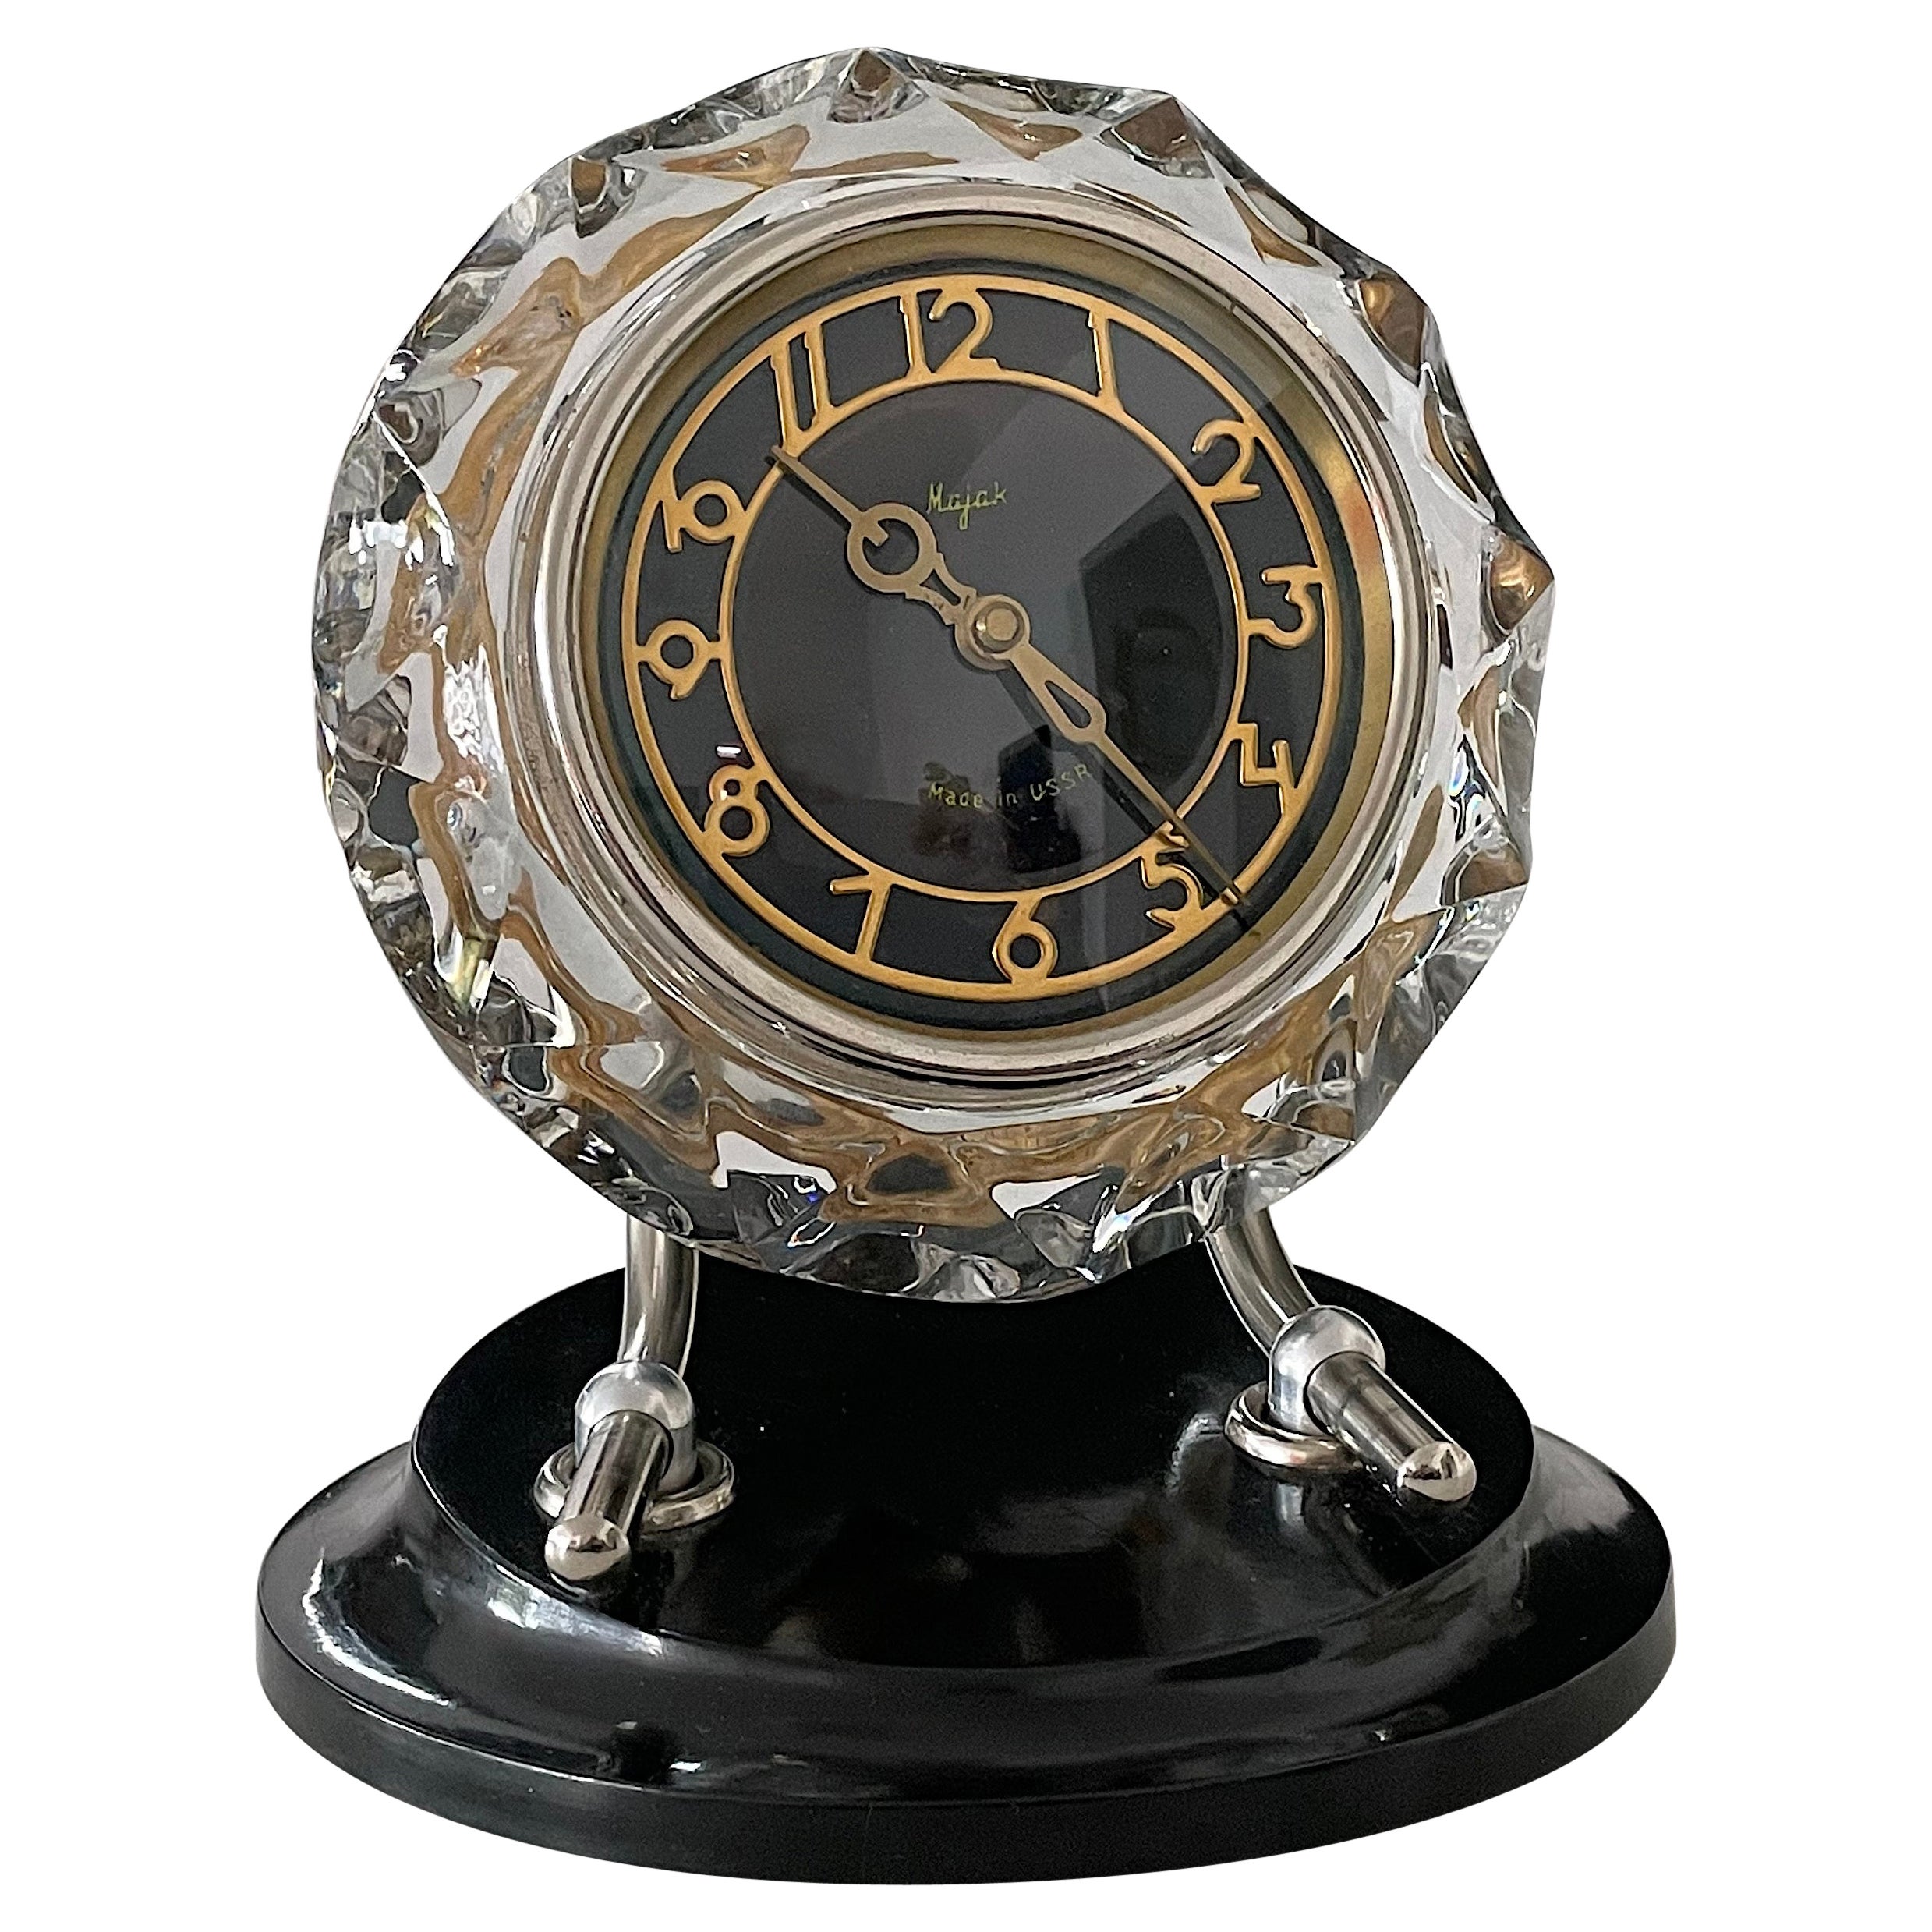 Russian Art Deco Style Mayak Clock